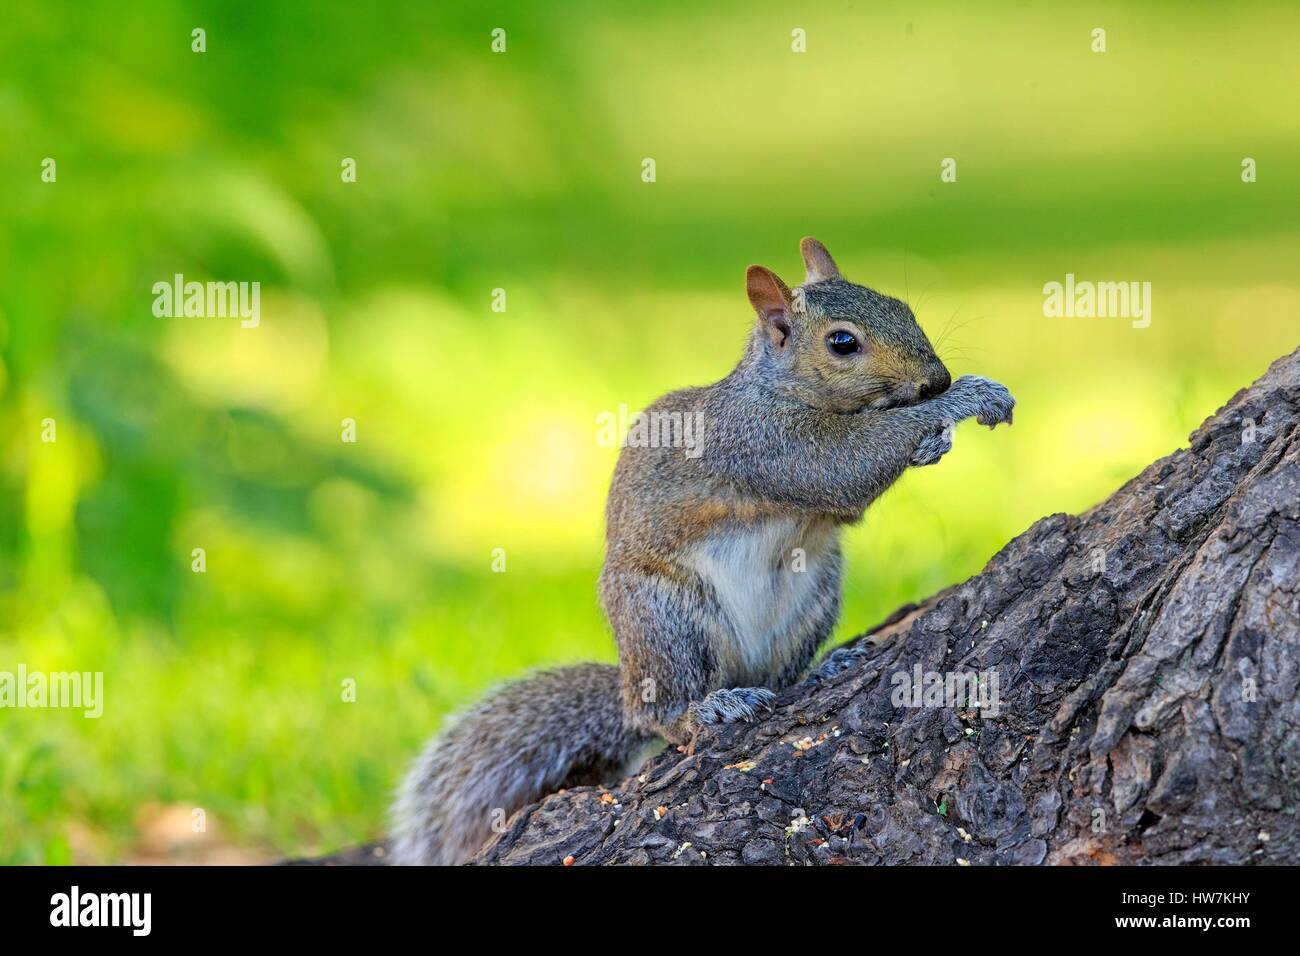 United States, Minnesota, l'écureuil gris ou d'écureuil gris (Sciurus carolinensis), sur le terrain Banque D'Images